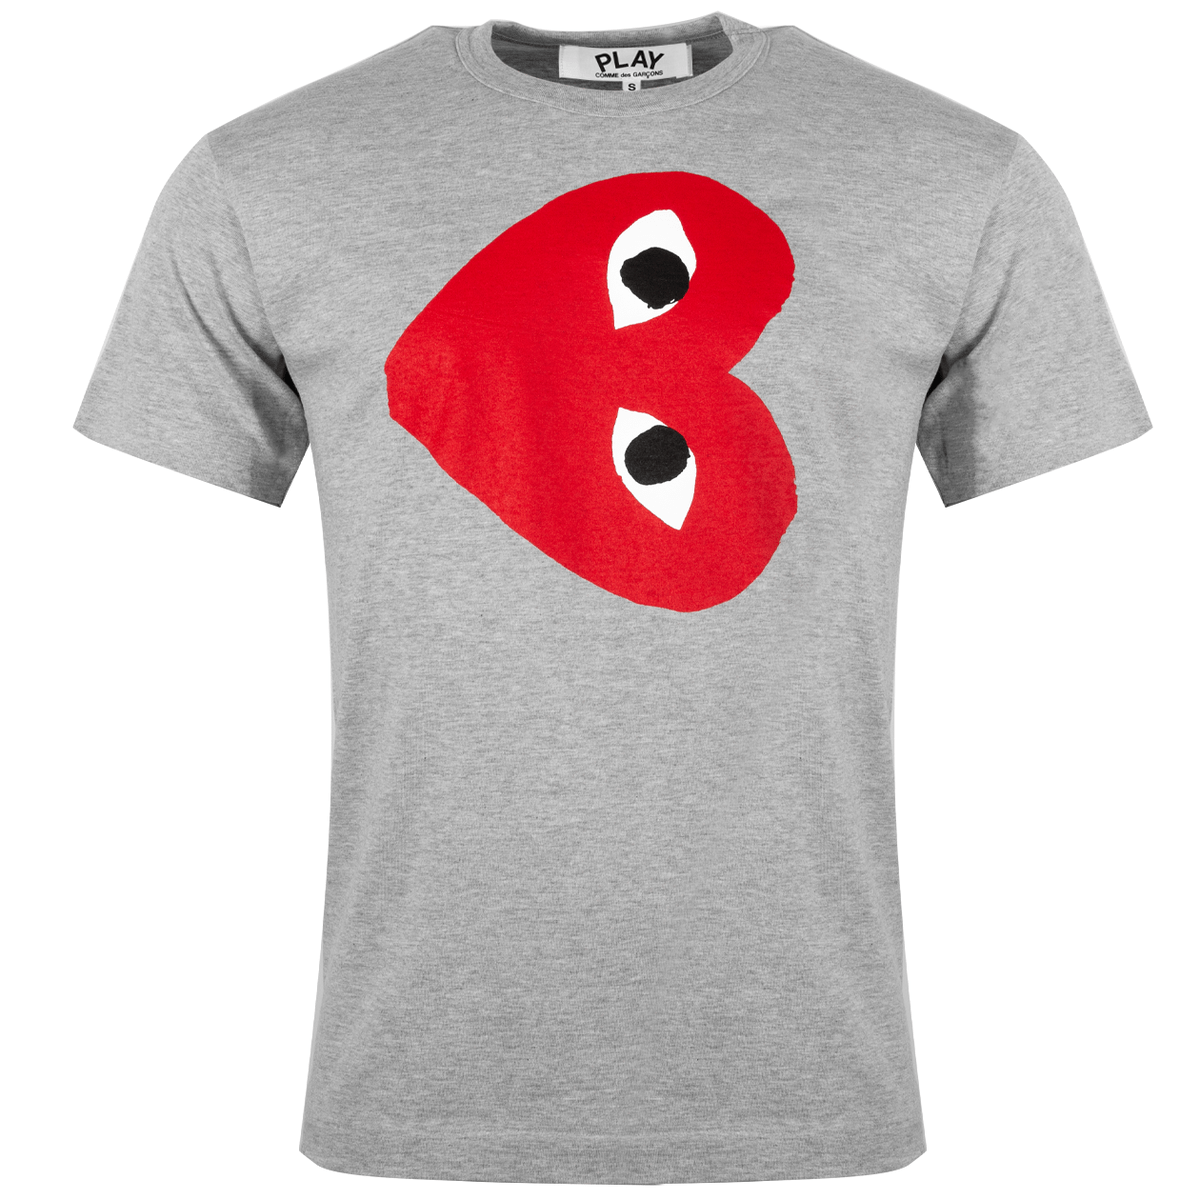 T264 Red Heart T-shirt Xl Grey